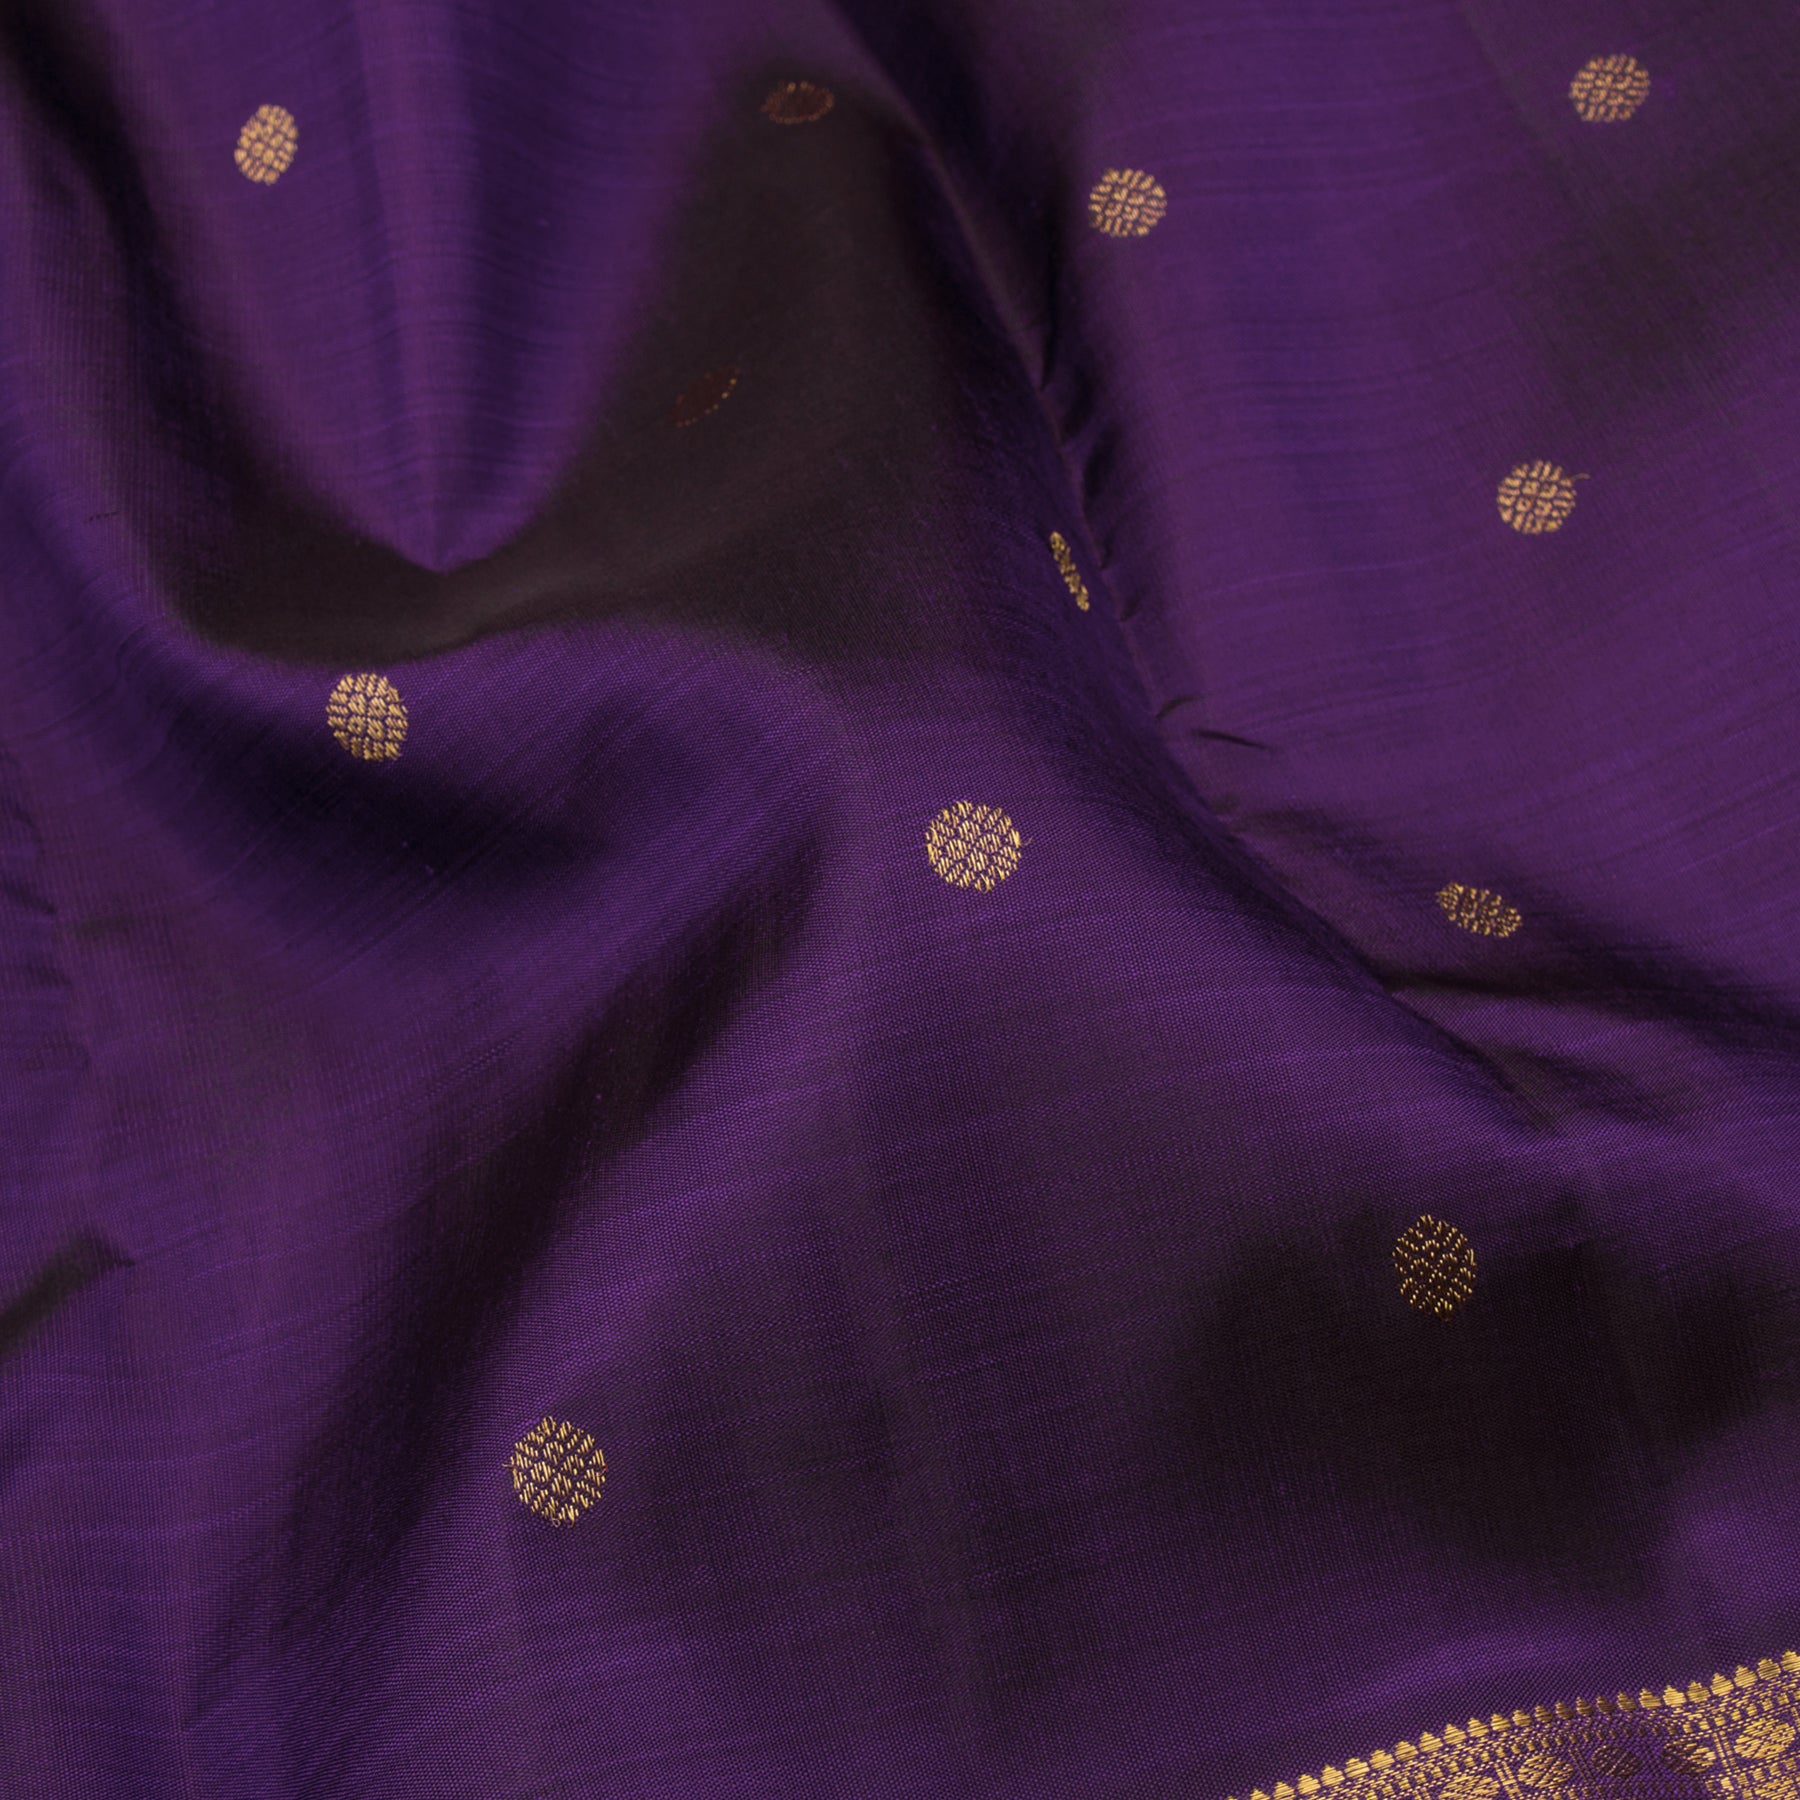 Kanakavalli Kanjivaram Silk Sari 23-110-HS001-12309 - Fabric View